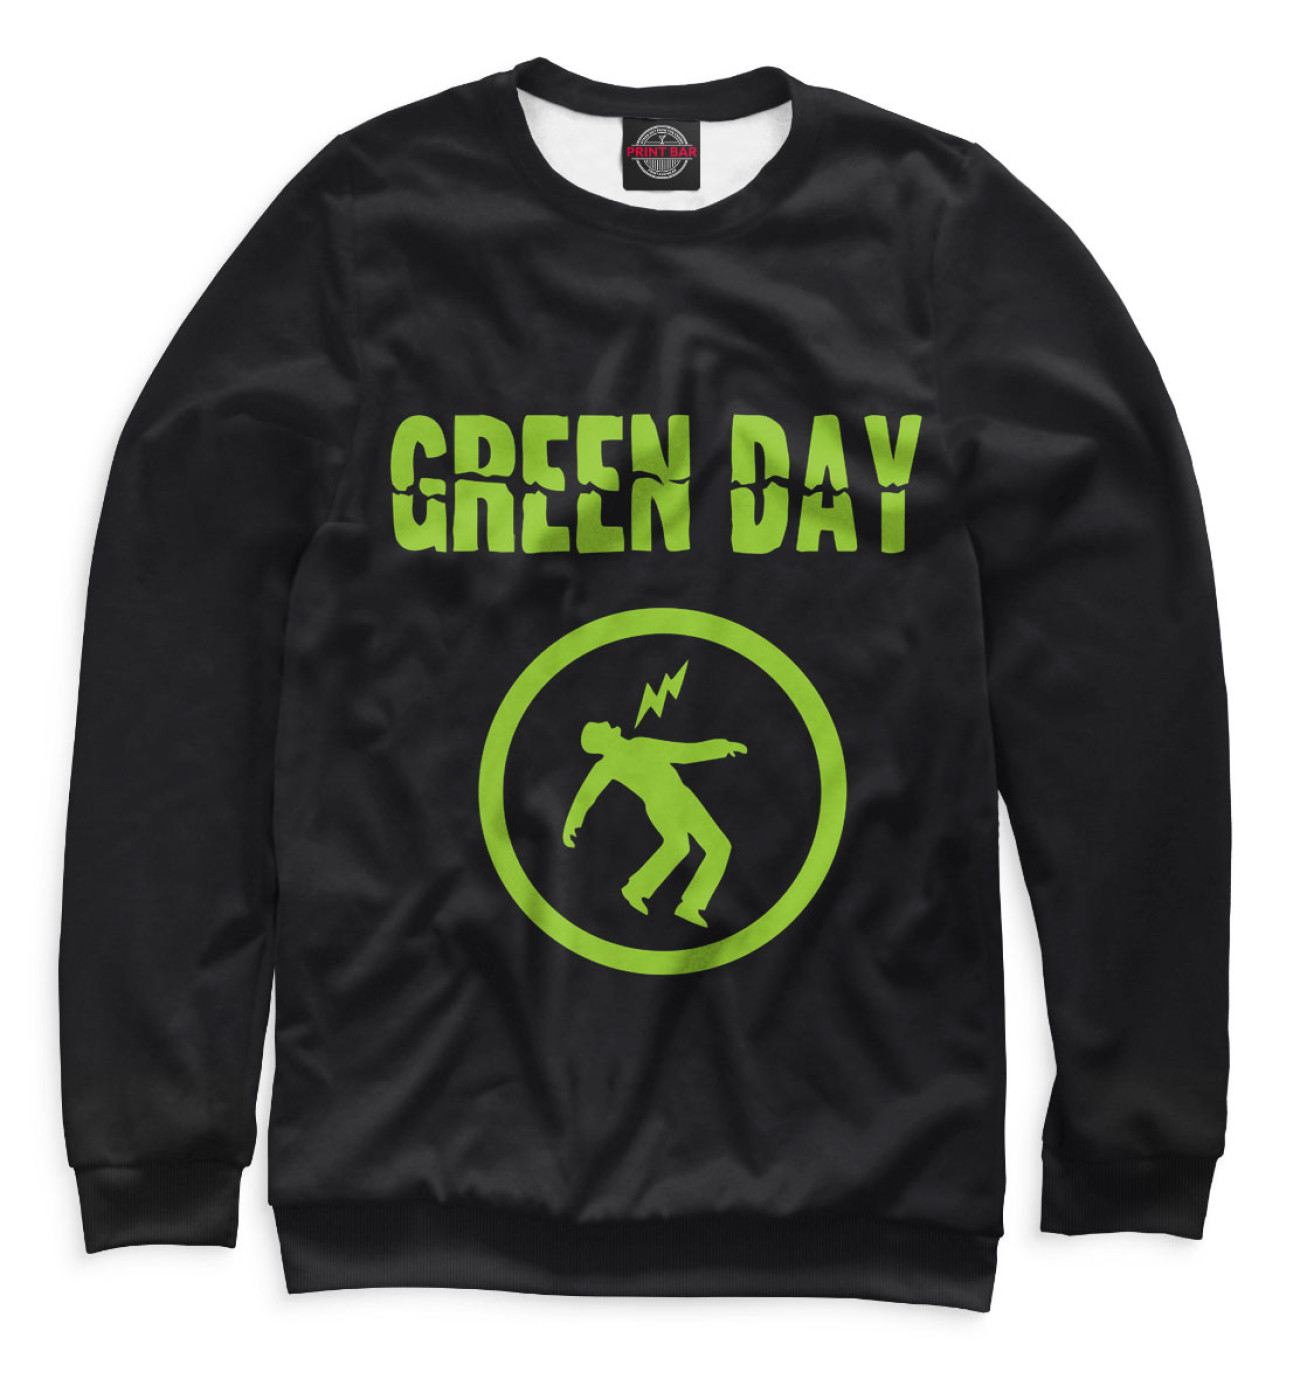 Женский Свитшот Green Day, артикул: GRE-843665-swi-1